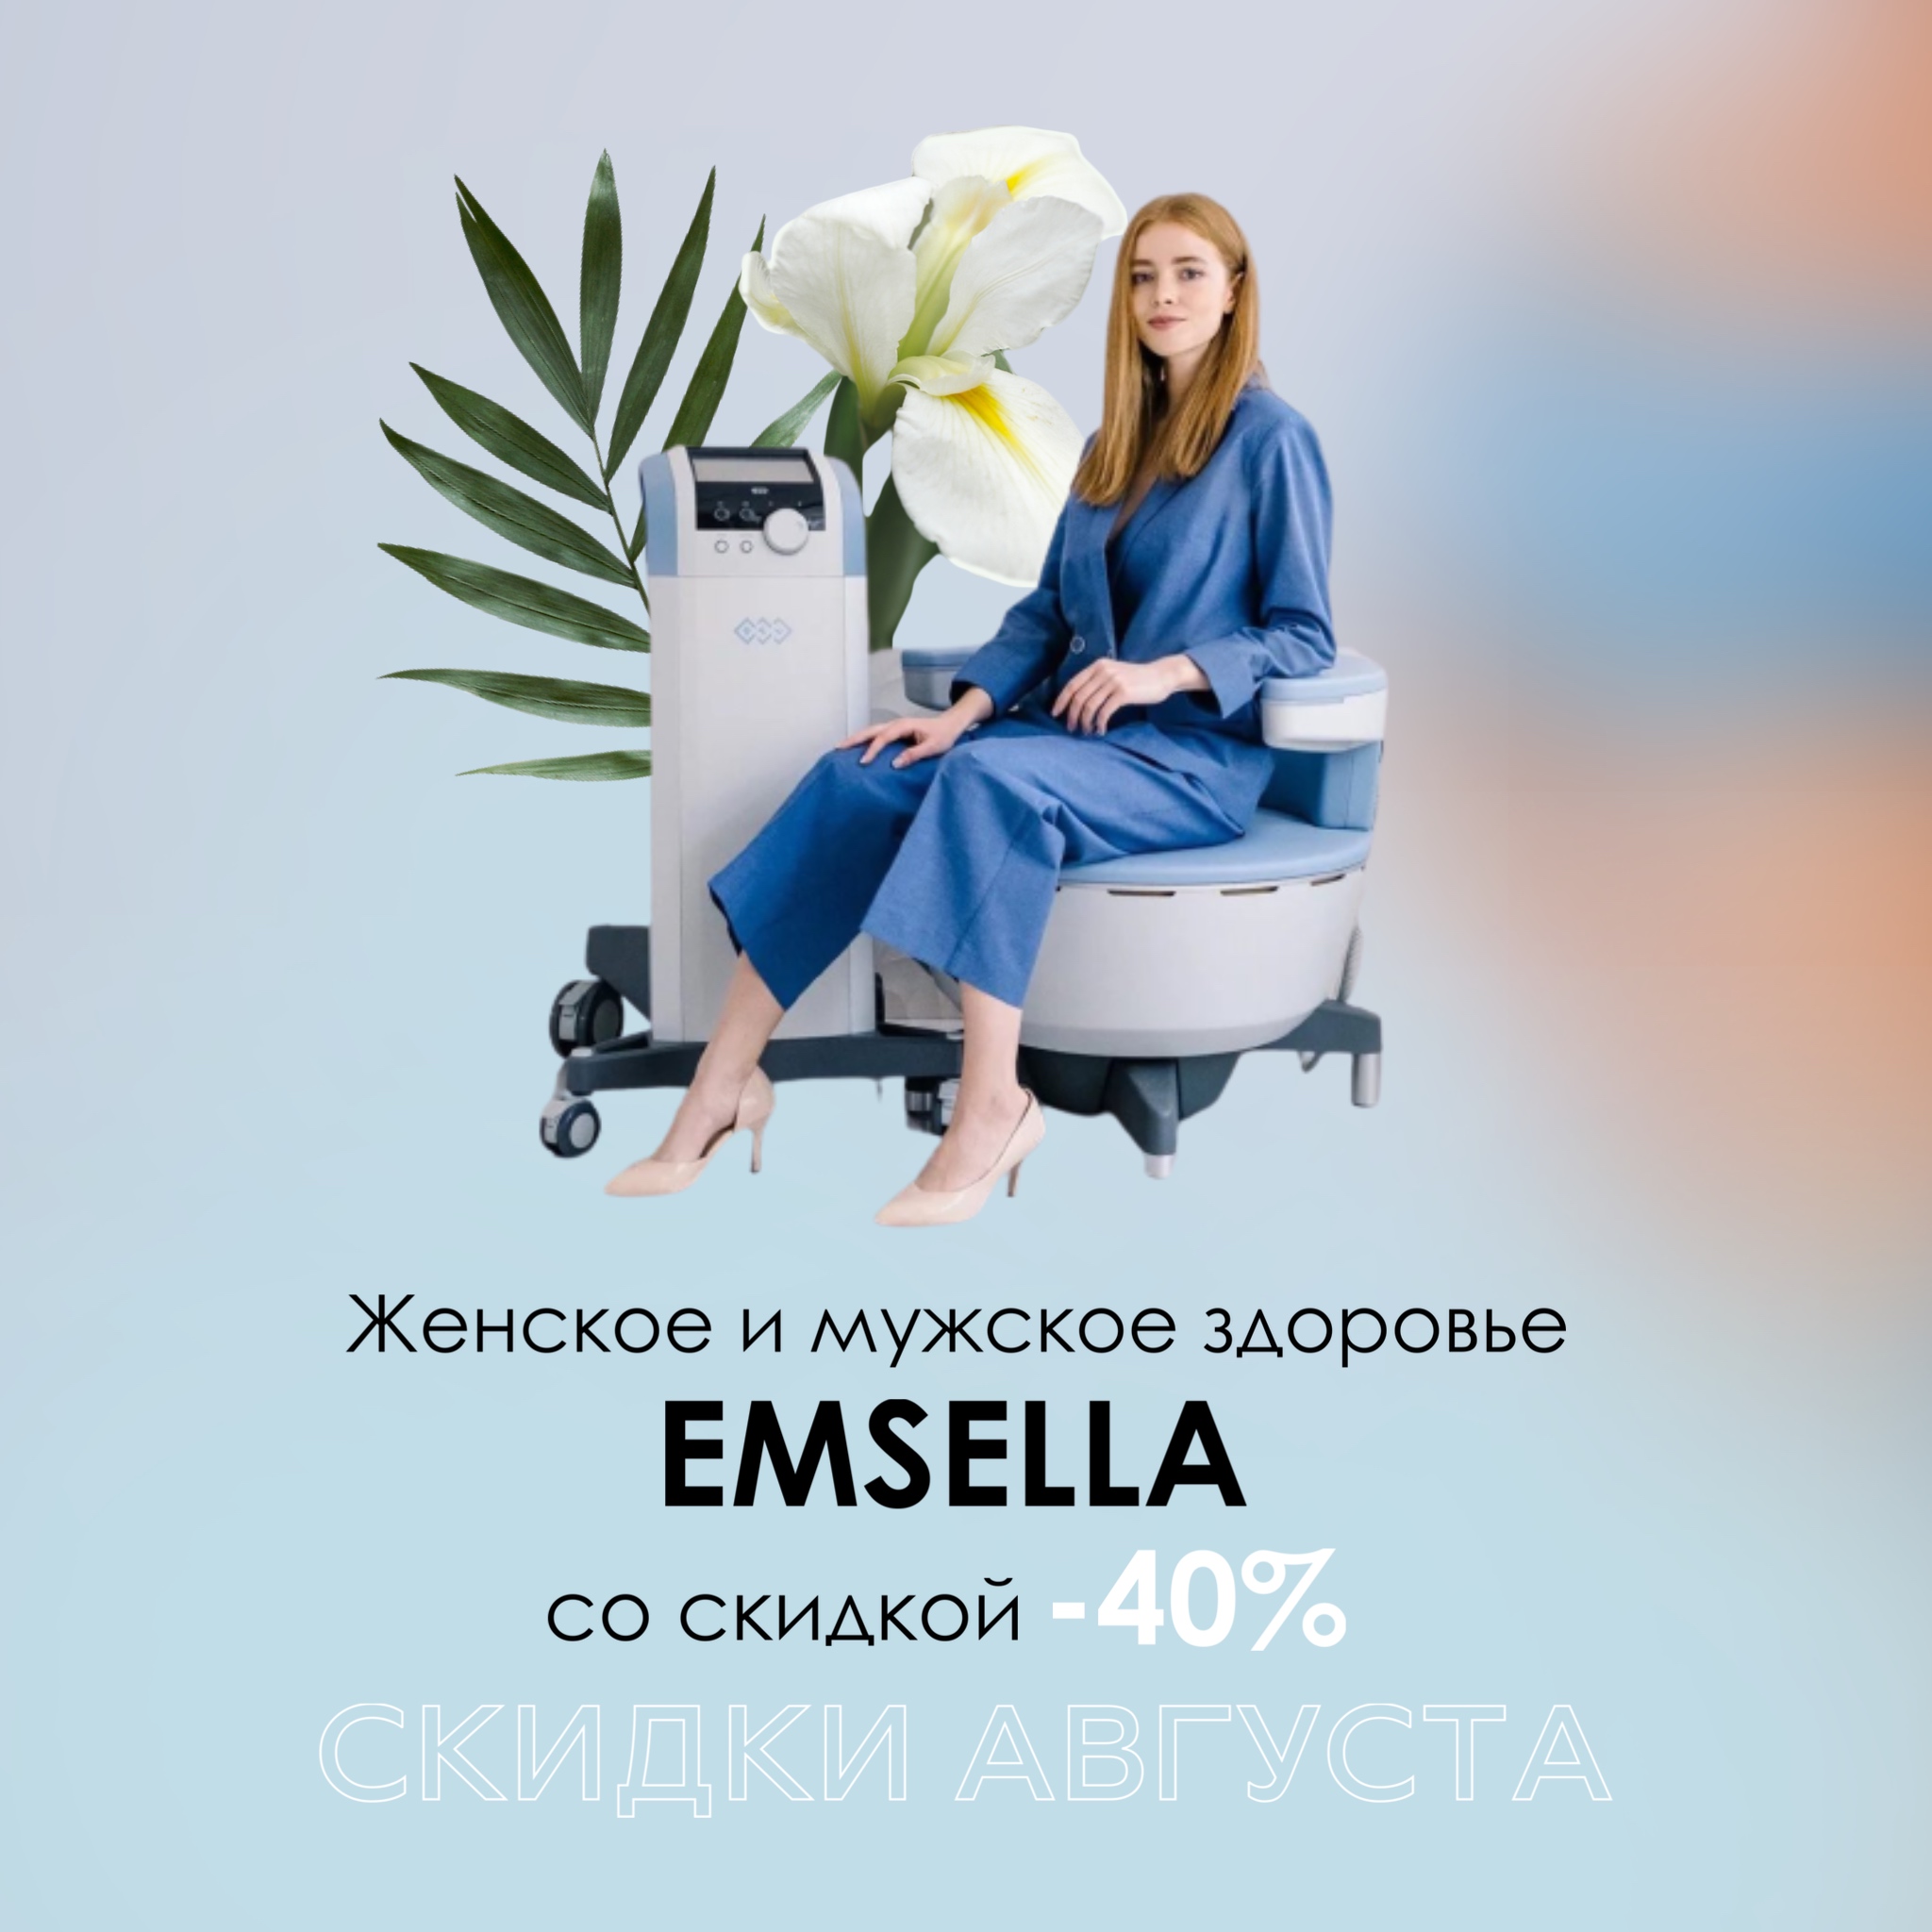 Emsella — для женского и мужского здоровья